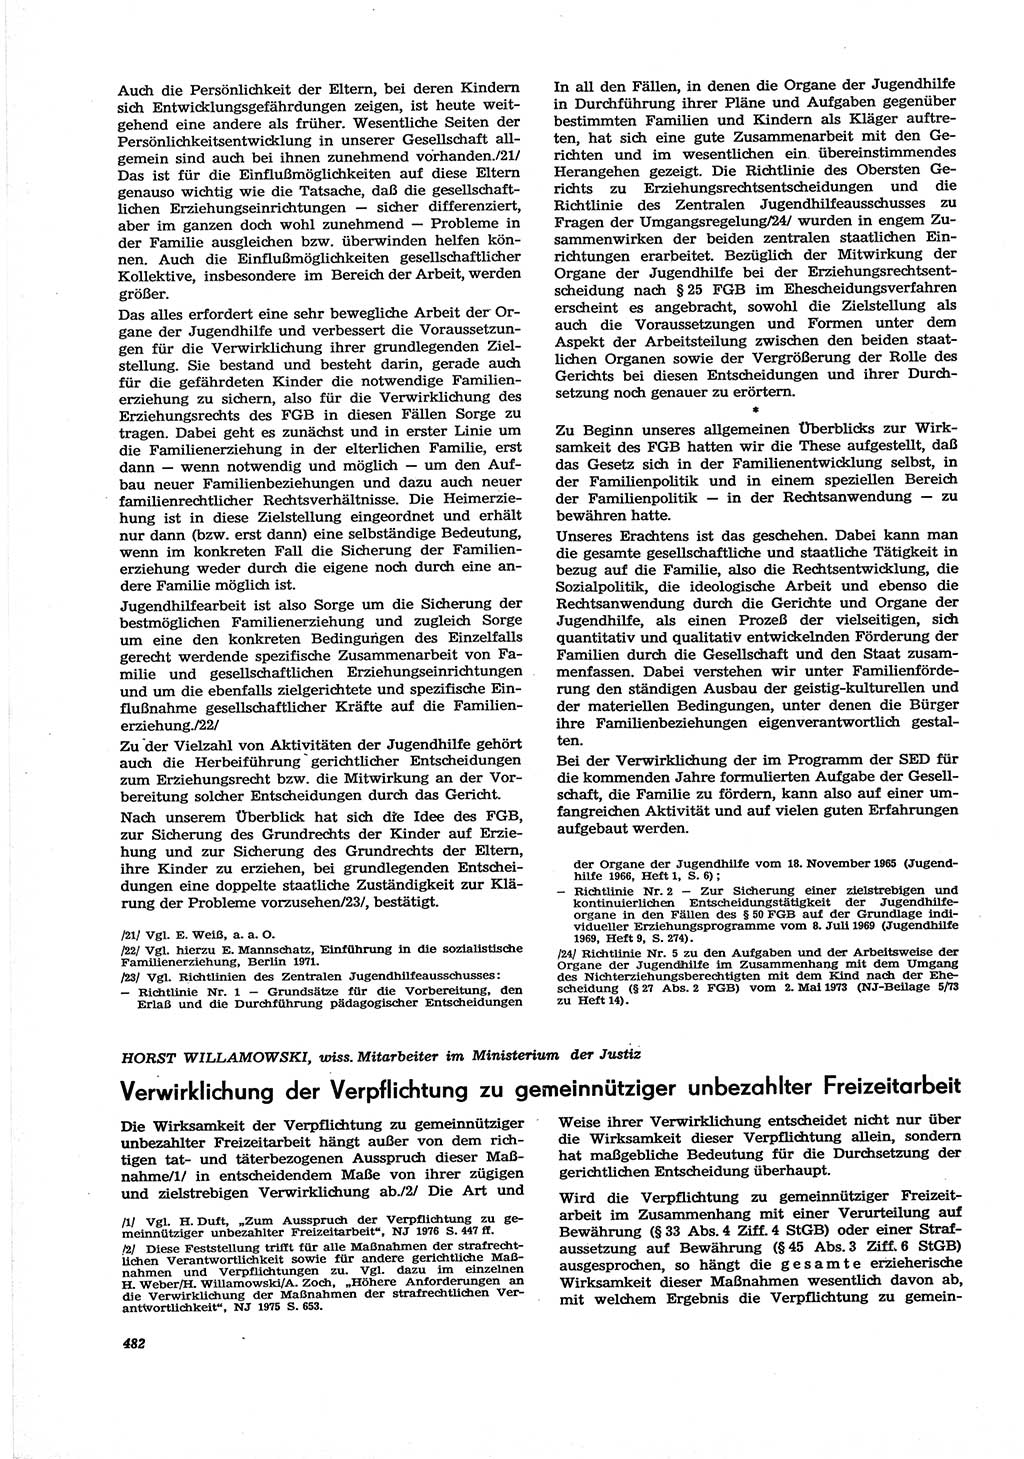 Neue Justiz (NJ), Zeitschrift für Recht und Rechtswissenschaft [Deutsche Demokratische Republik (DDR)], 30. Jahrgang 1976, Seite 482 (NJ DDR 1976, S. 482)